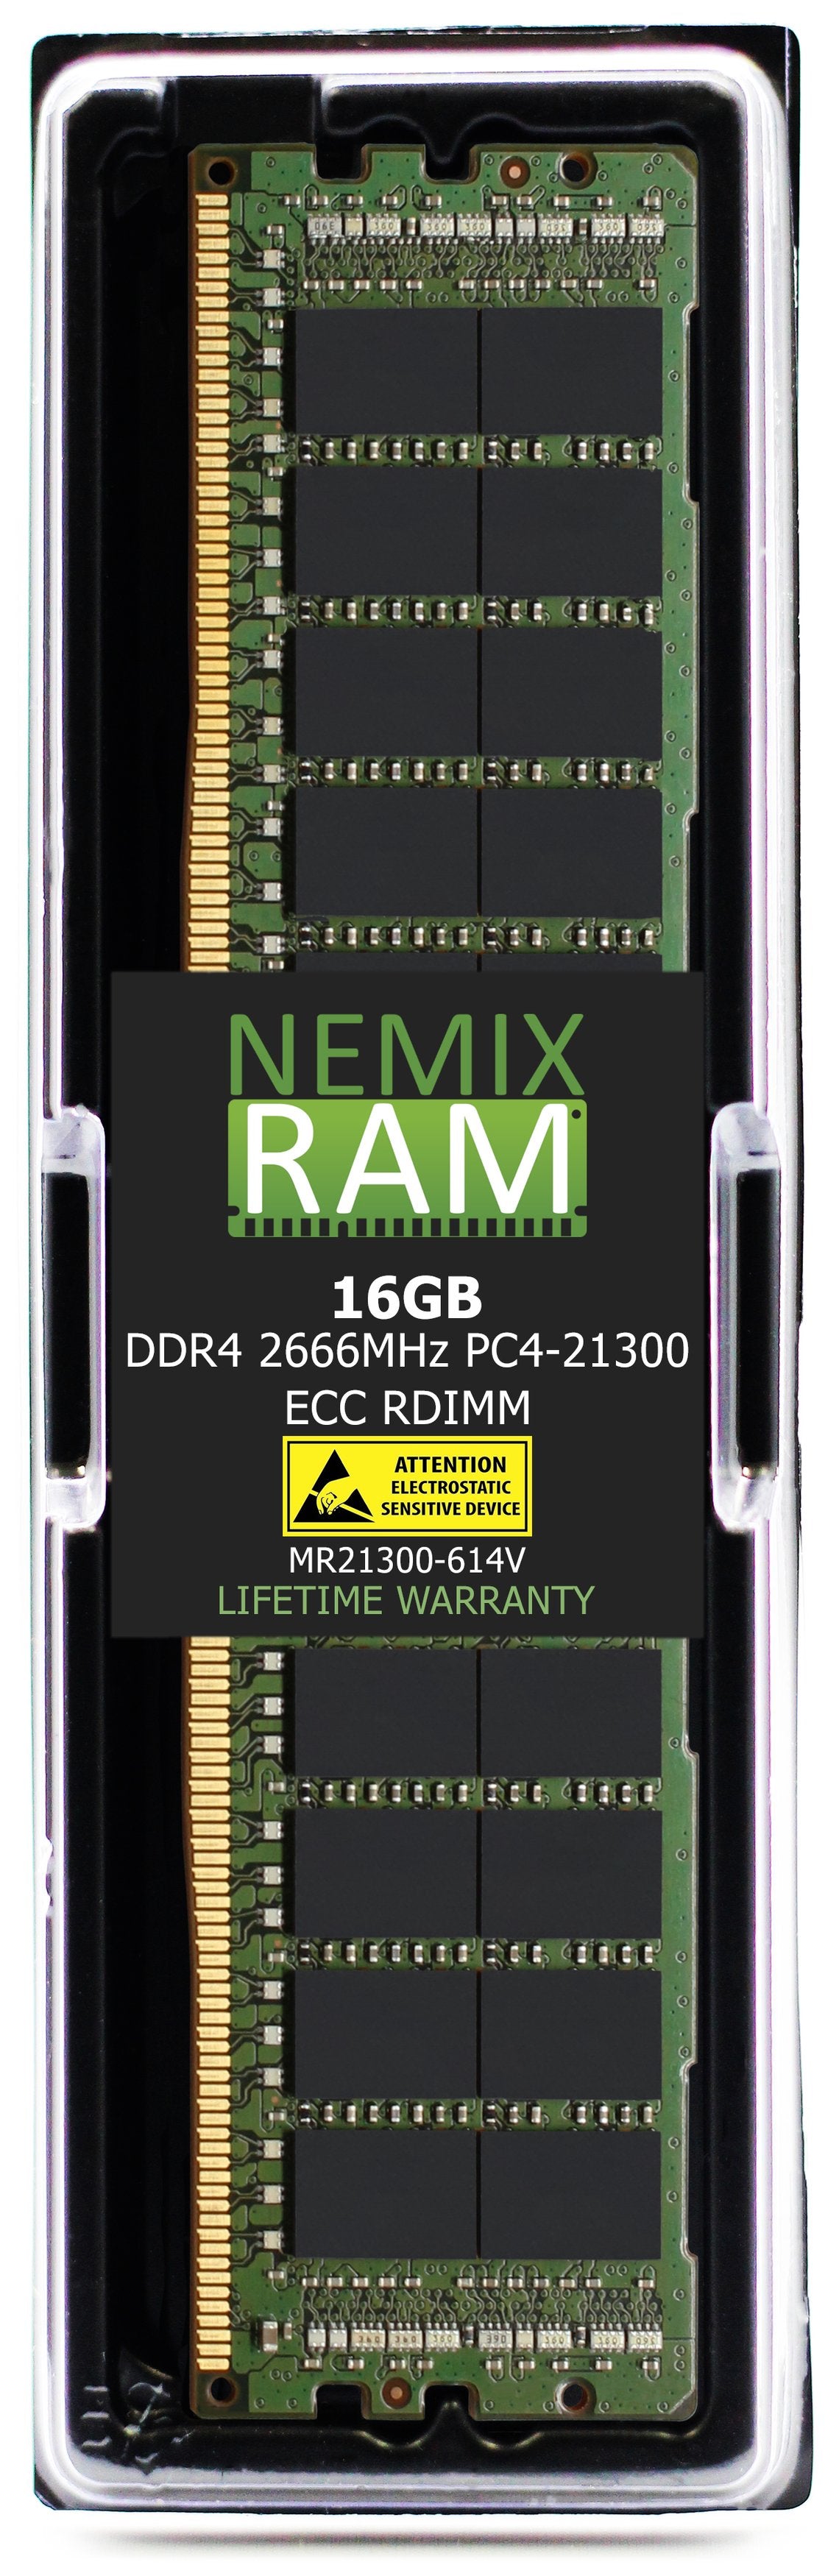 16GB DDR4 2666MHZ PC4-21300 VLP RDIMM Compatible with Supermicro MEM-DR416L-CL05-ER29